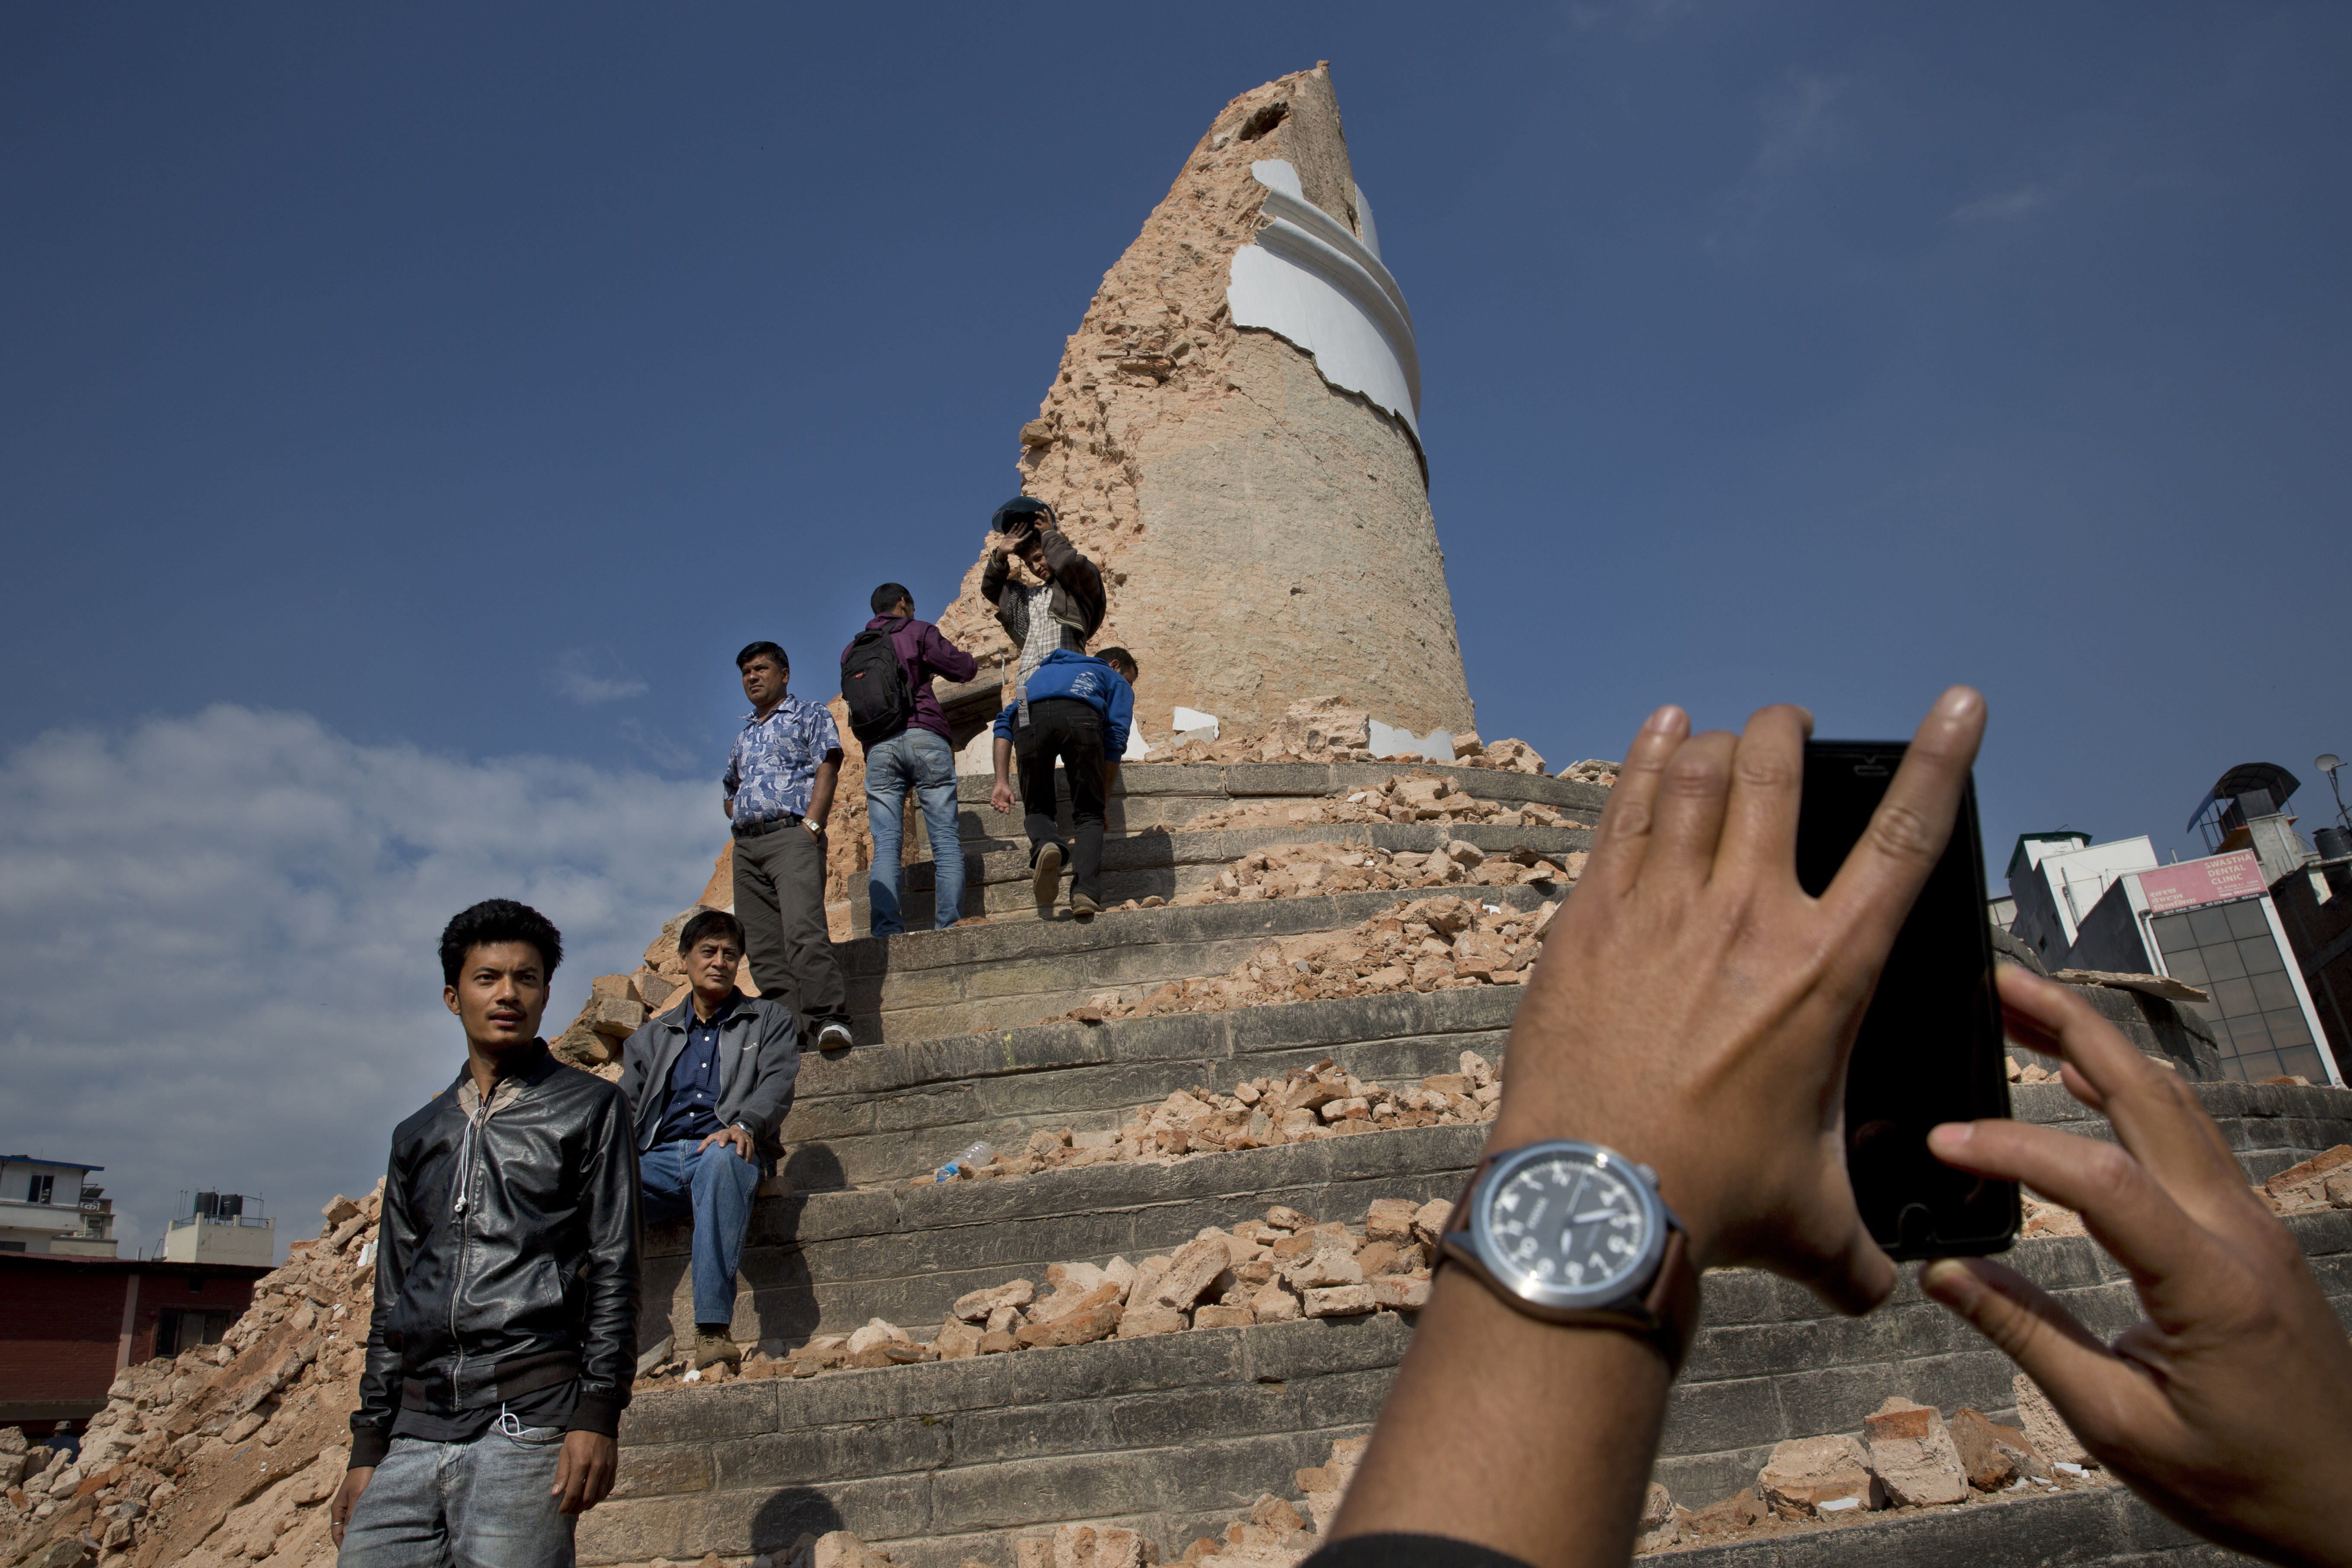 dharahara tower